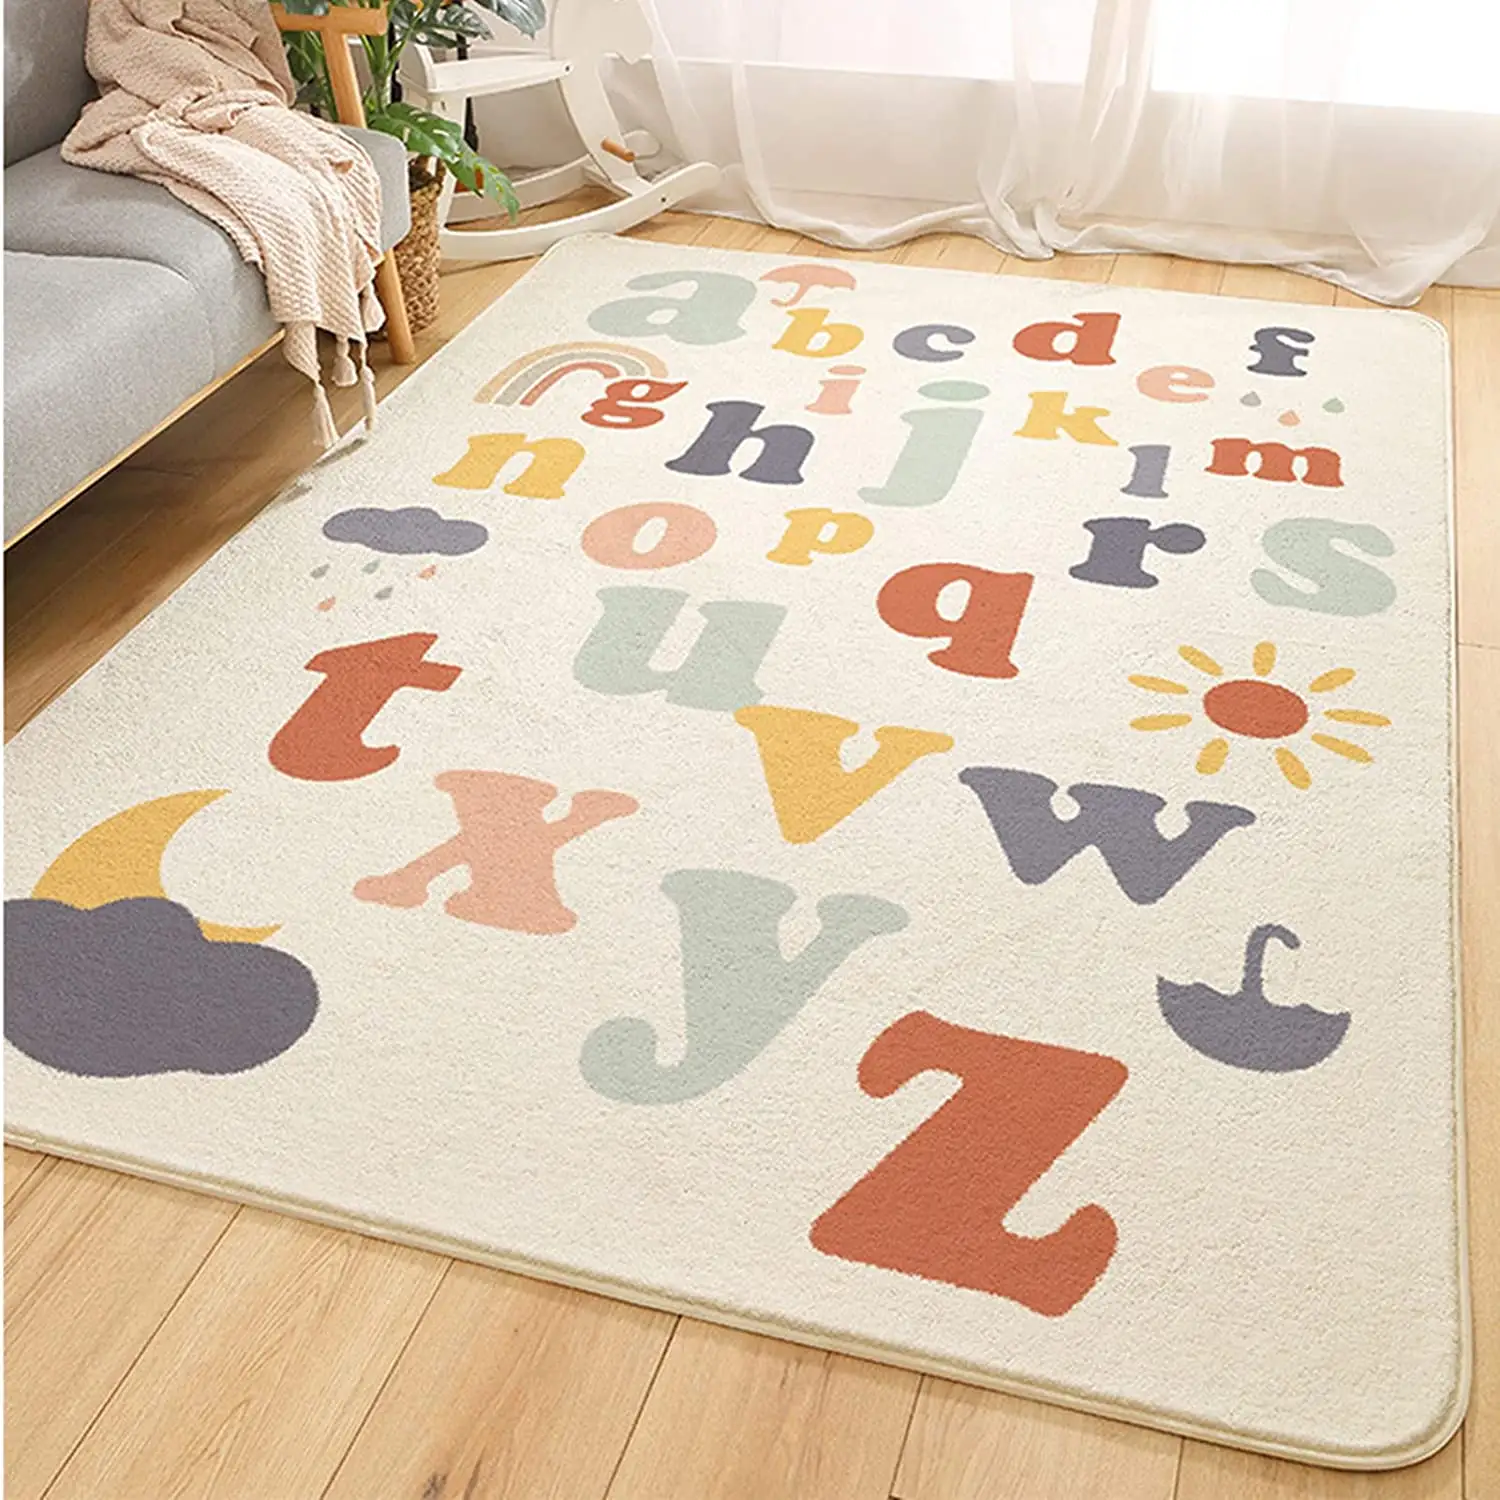 Tapete infantil ABC alfabeto de lã sintética tapete infantil para play area 4' x 5.3' tapete infantil berçário infantil